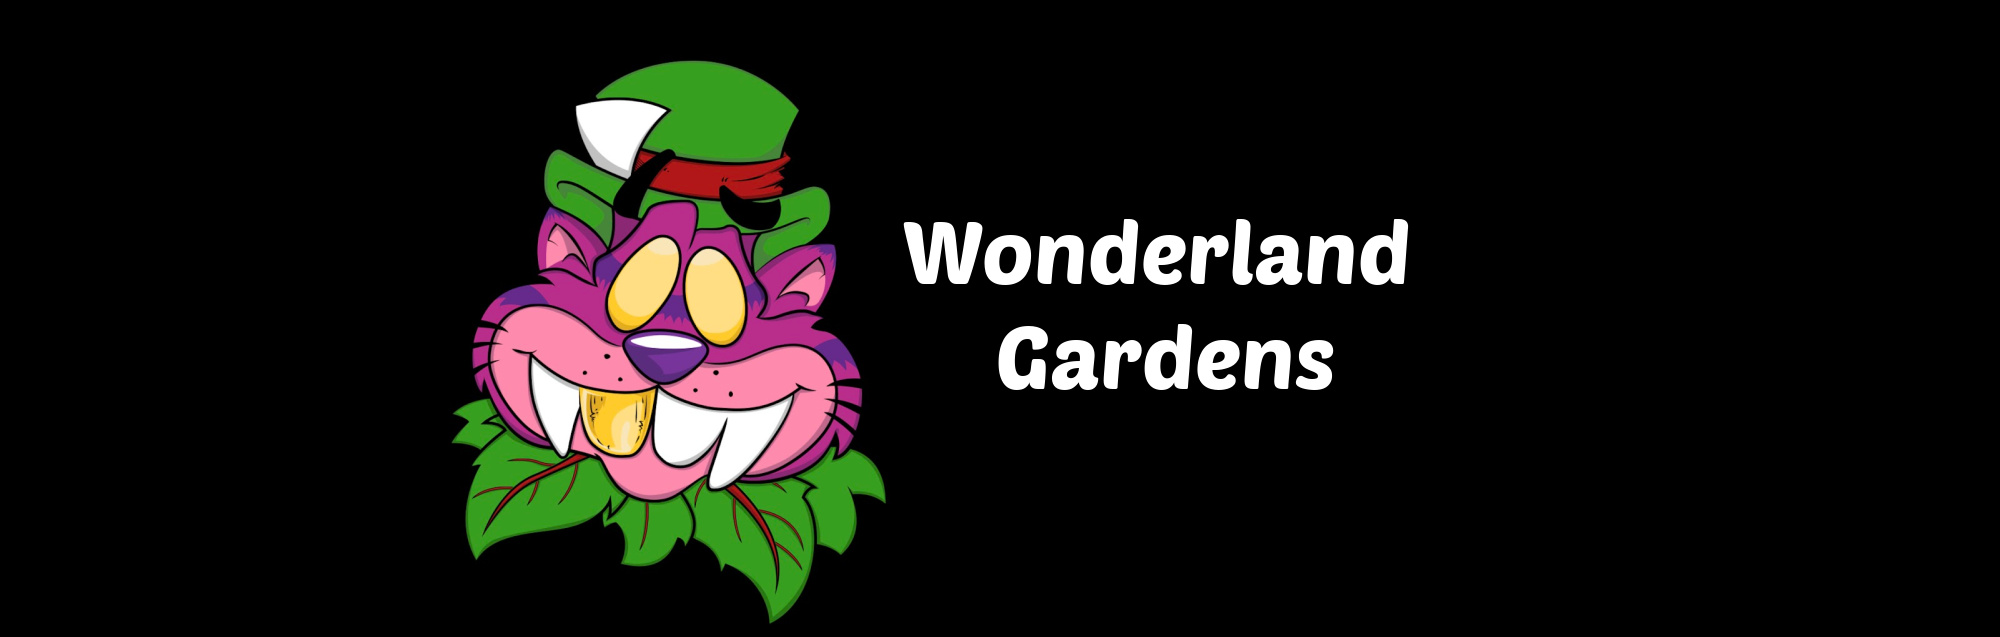 image of wonderland gardens in wilmington nc